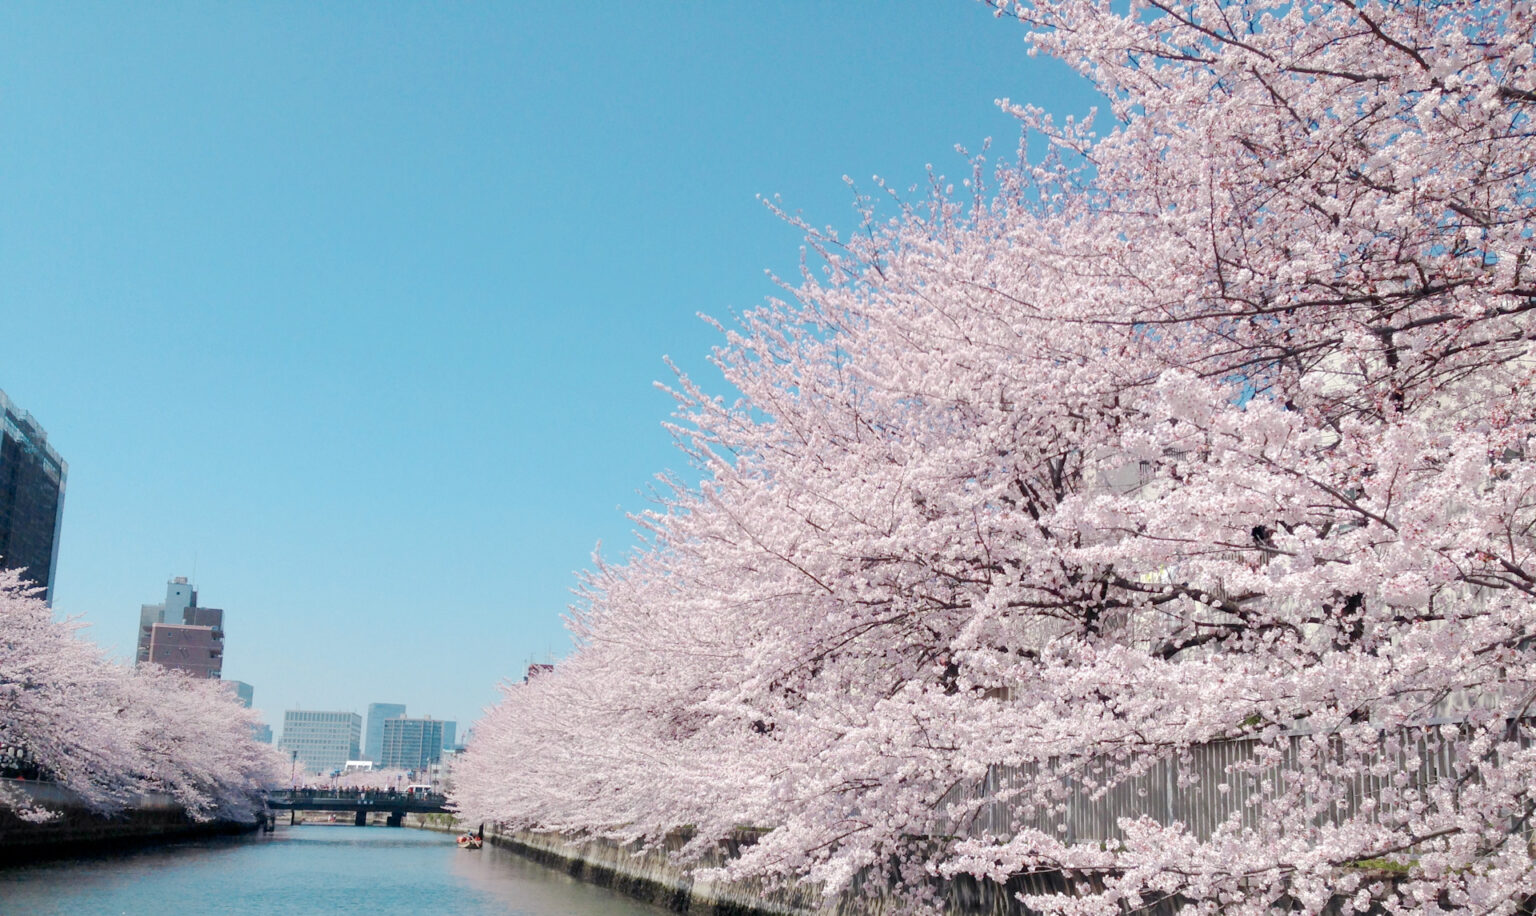 およそ1.2kmにわたる大横川の桜並木